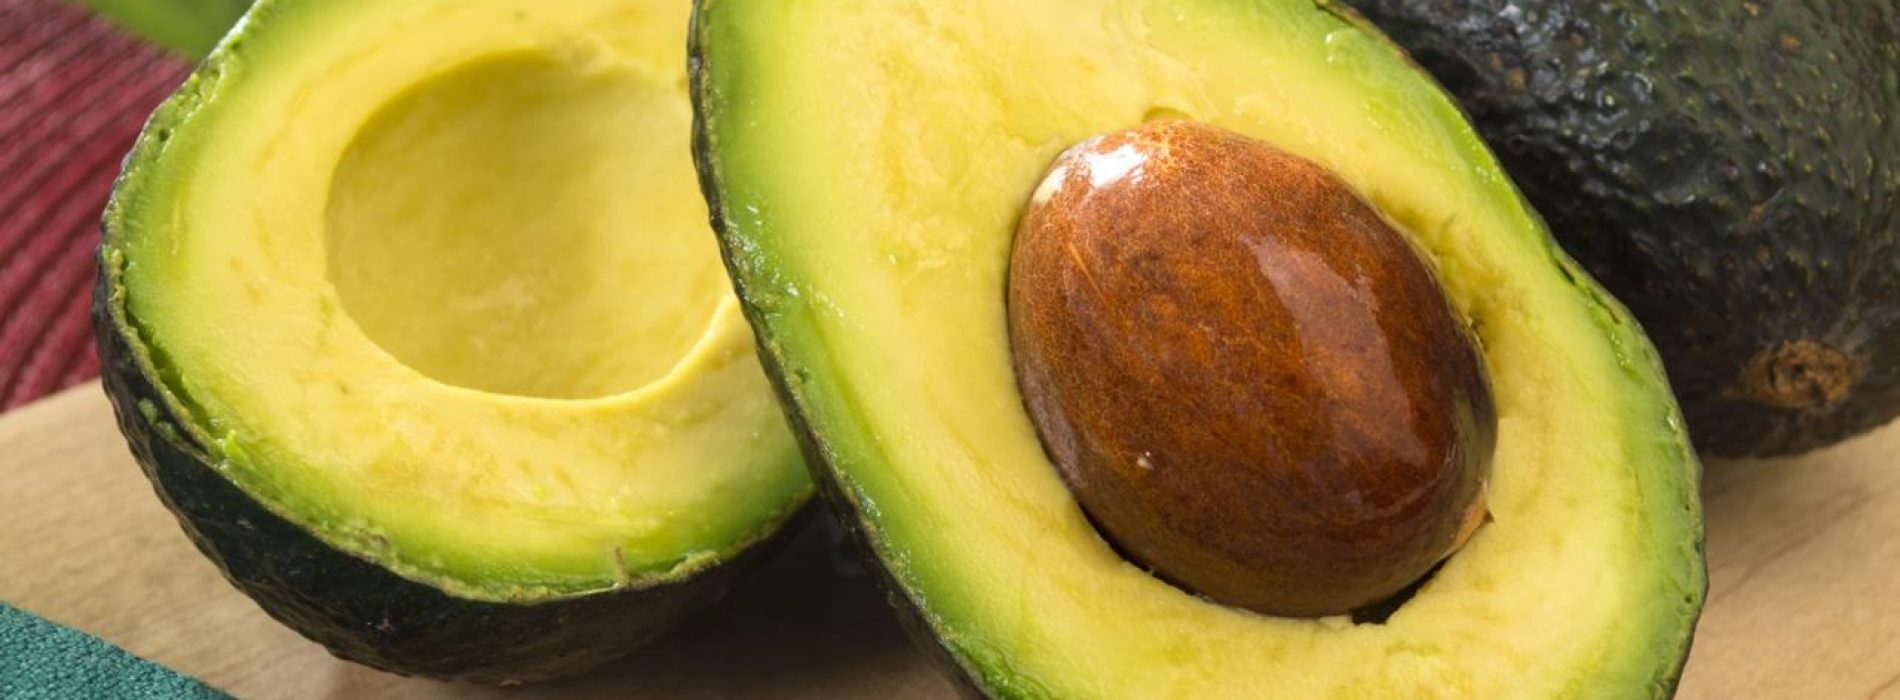 Gooi de volgende keer dat je een avocado eet de pit niet weg: het is geweldig voor de behandeling van ontstekingen